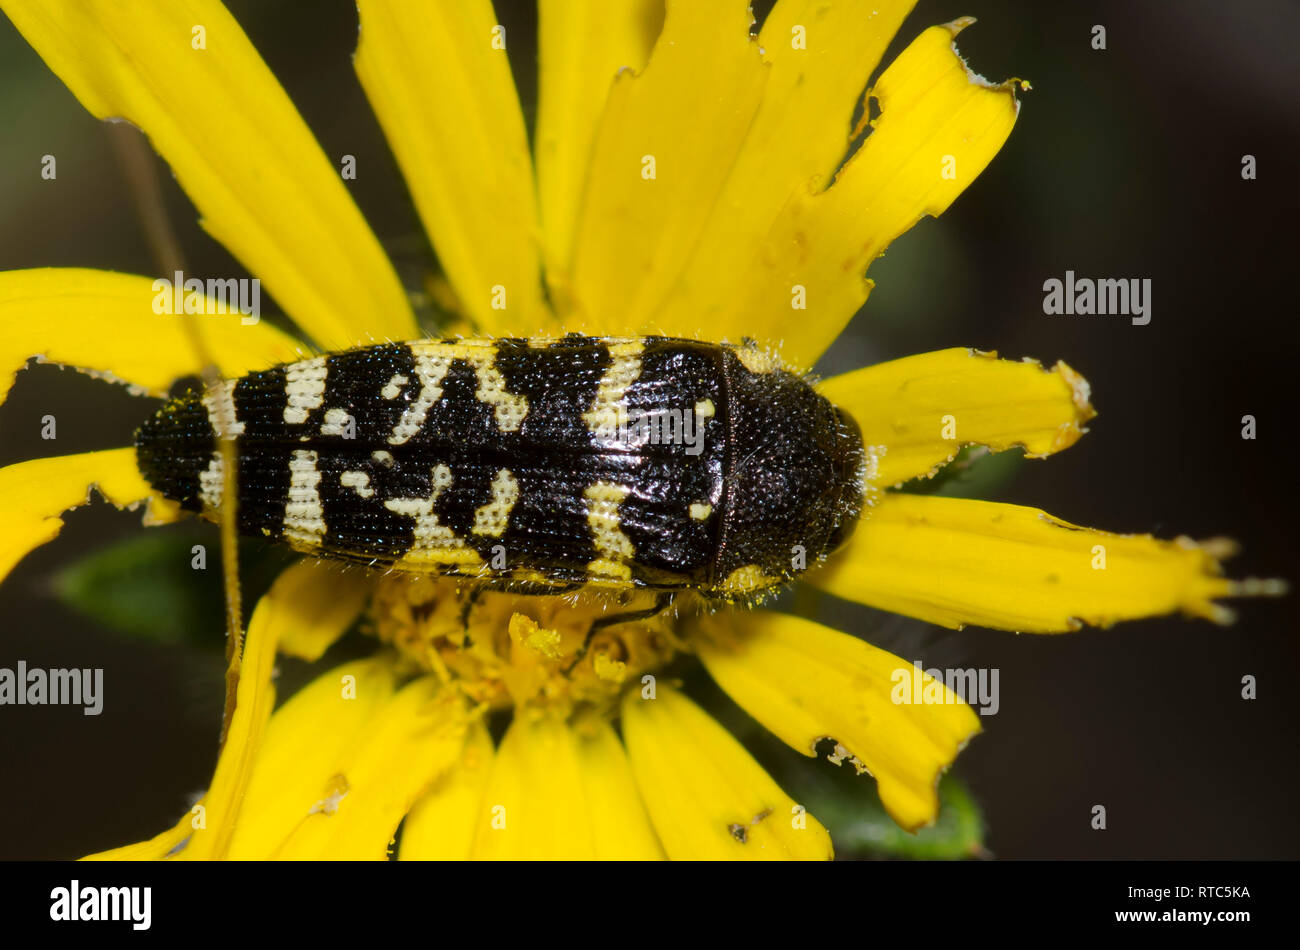 Metallic Wood-boring Beetle, Acmaeodera macra Stock Photo